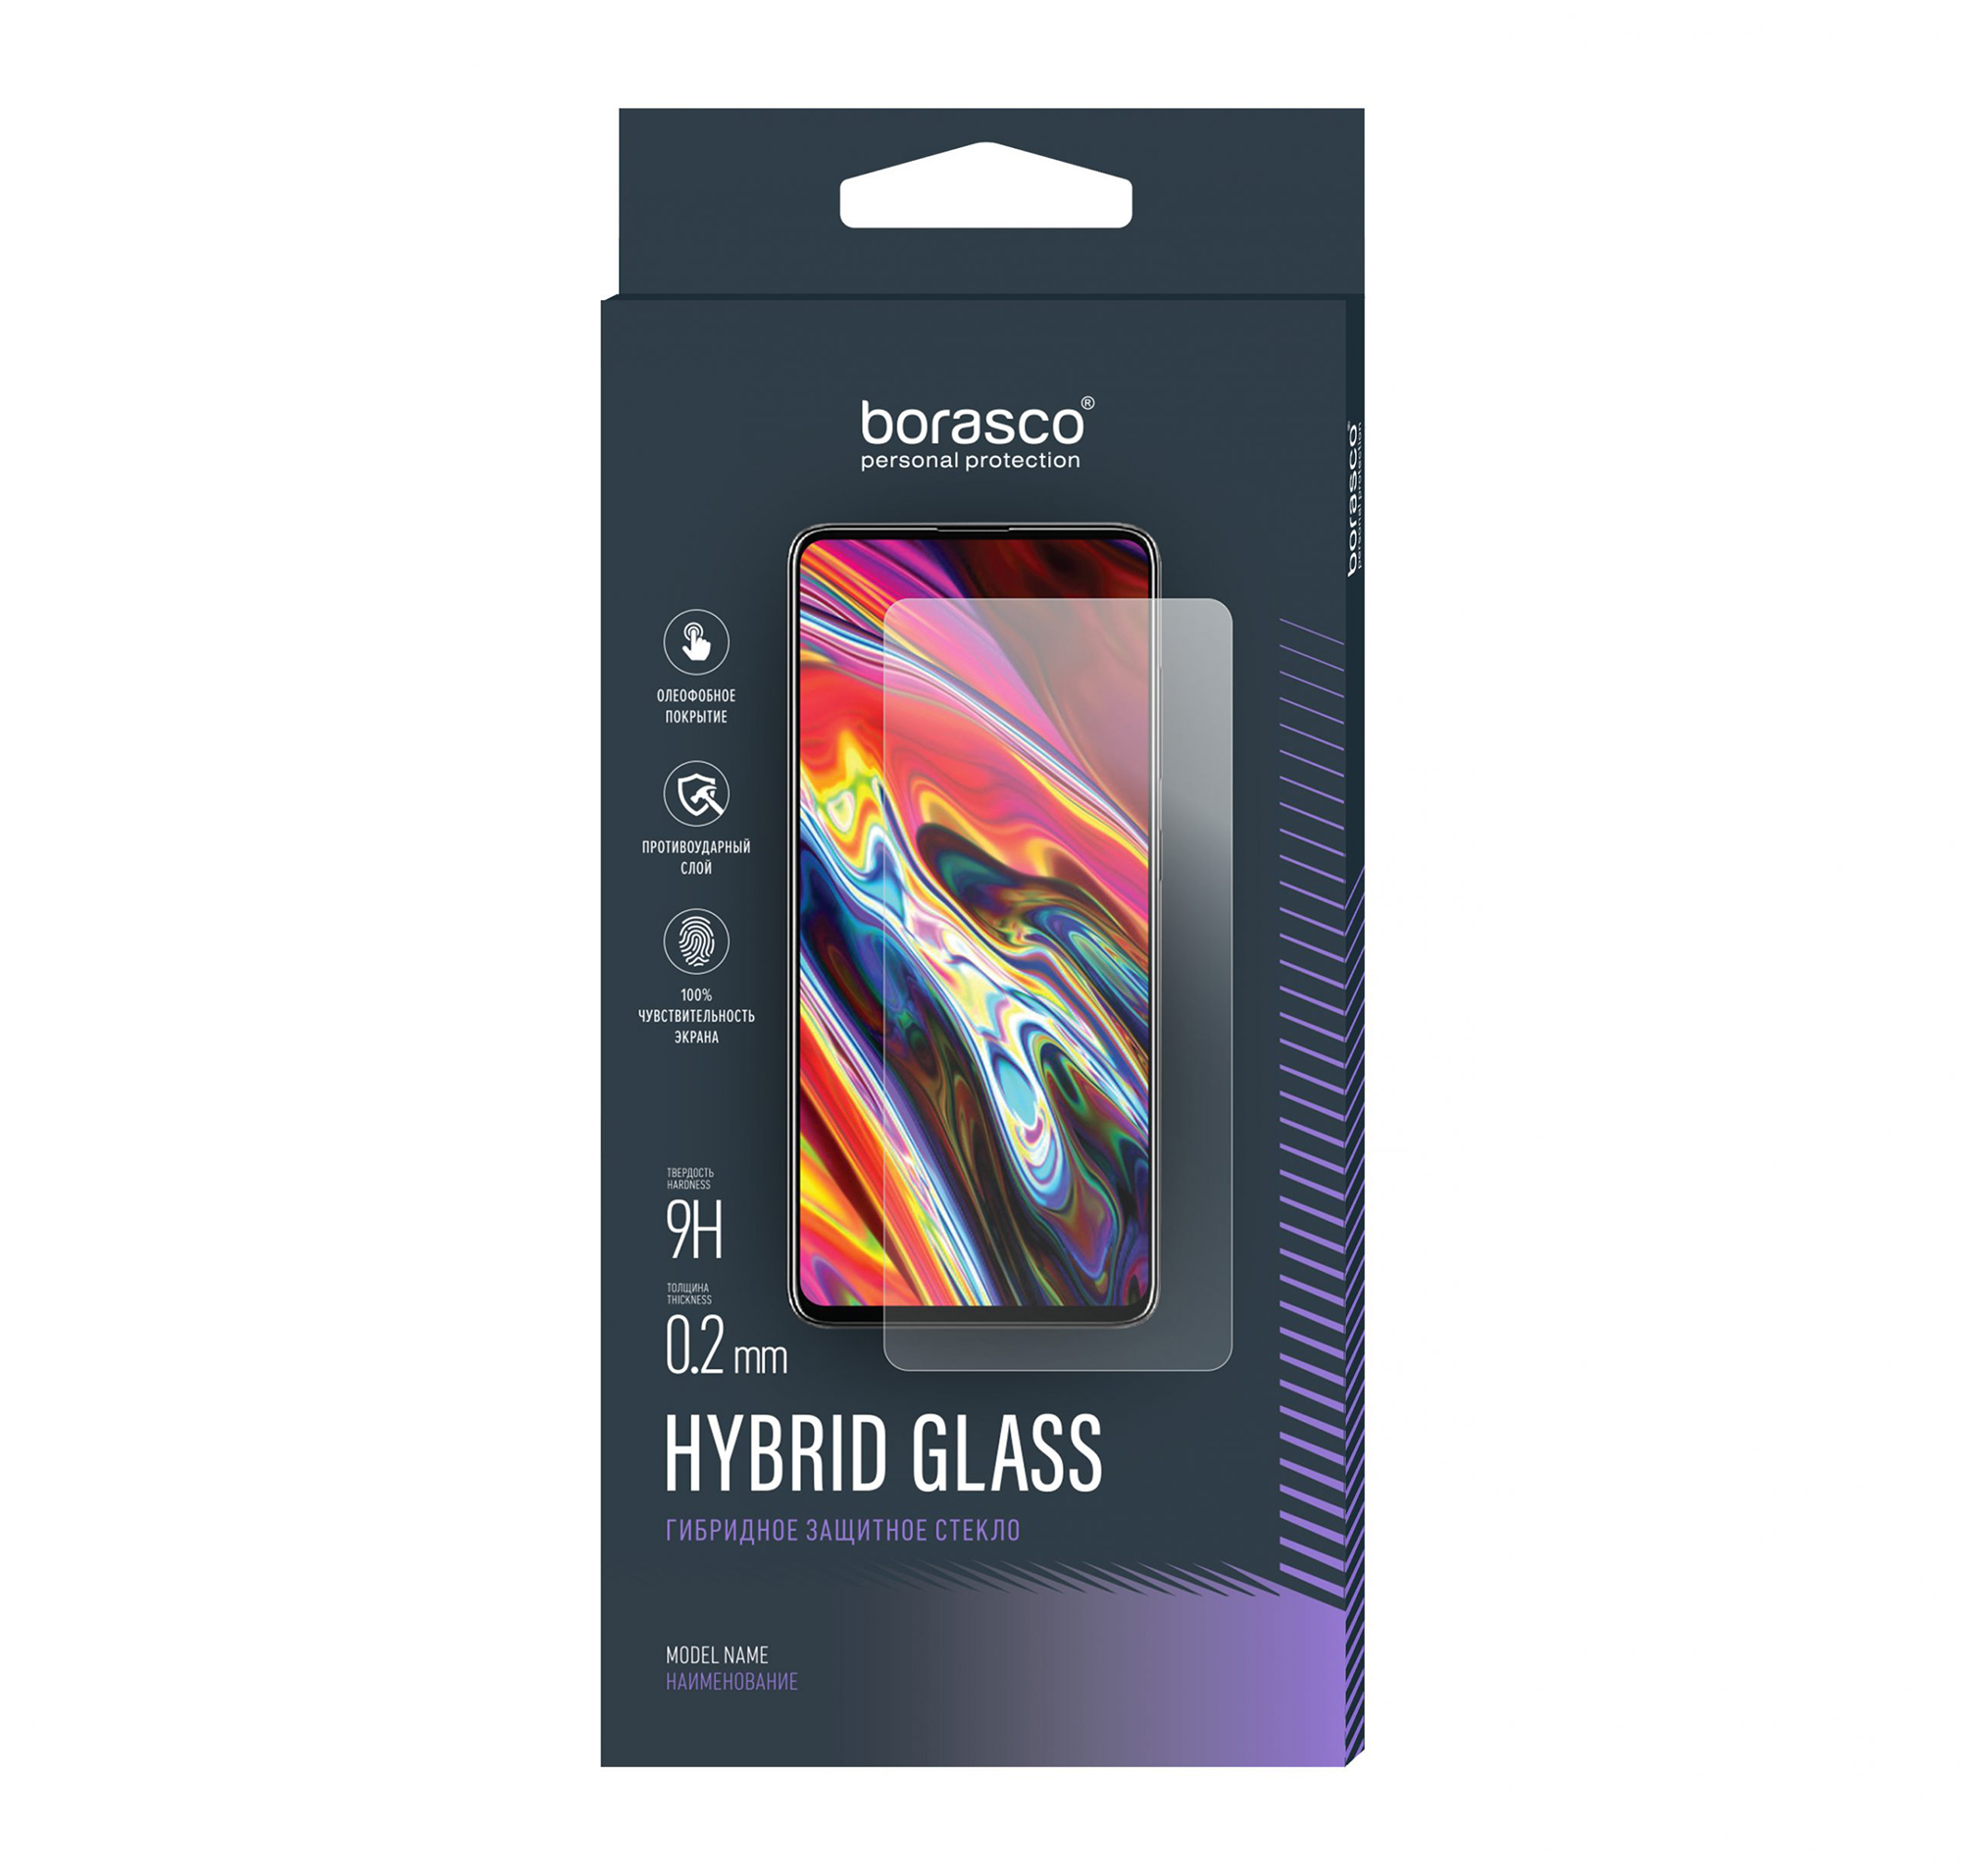 Защитное стекло Hybrid Glass для OPPO Reno 2Z/ Reno 2F hydrogel film for oppo reno 2 z f screen protector for oppo reno z 2z 2 2f ace screen protector oppo reno ace 2f 2z cover film